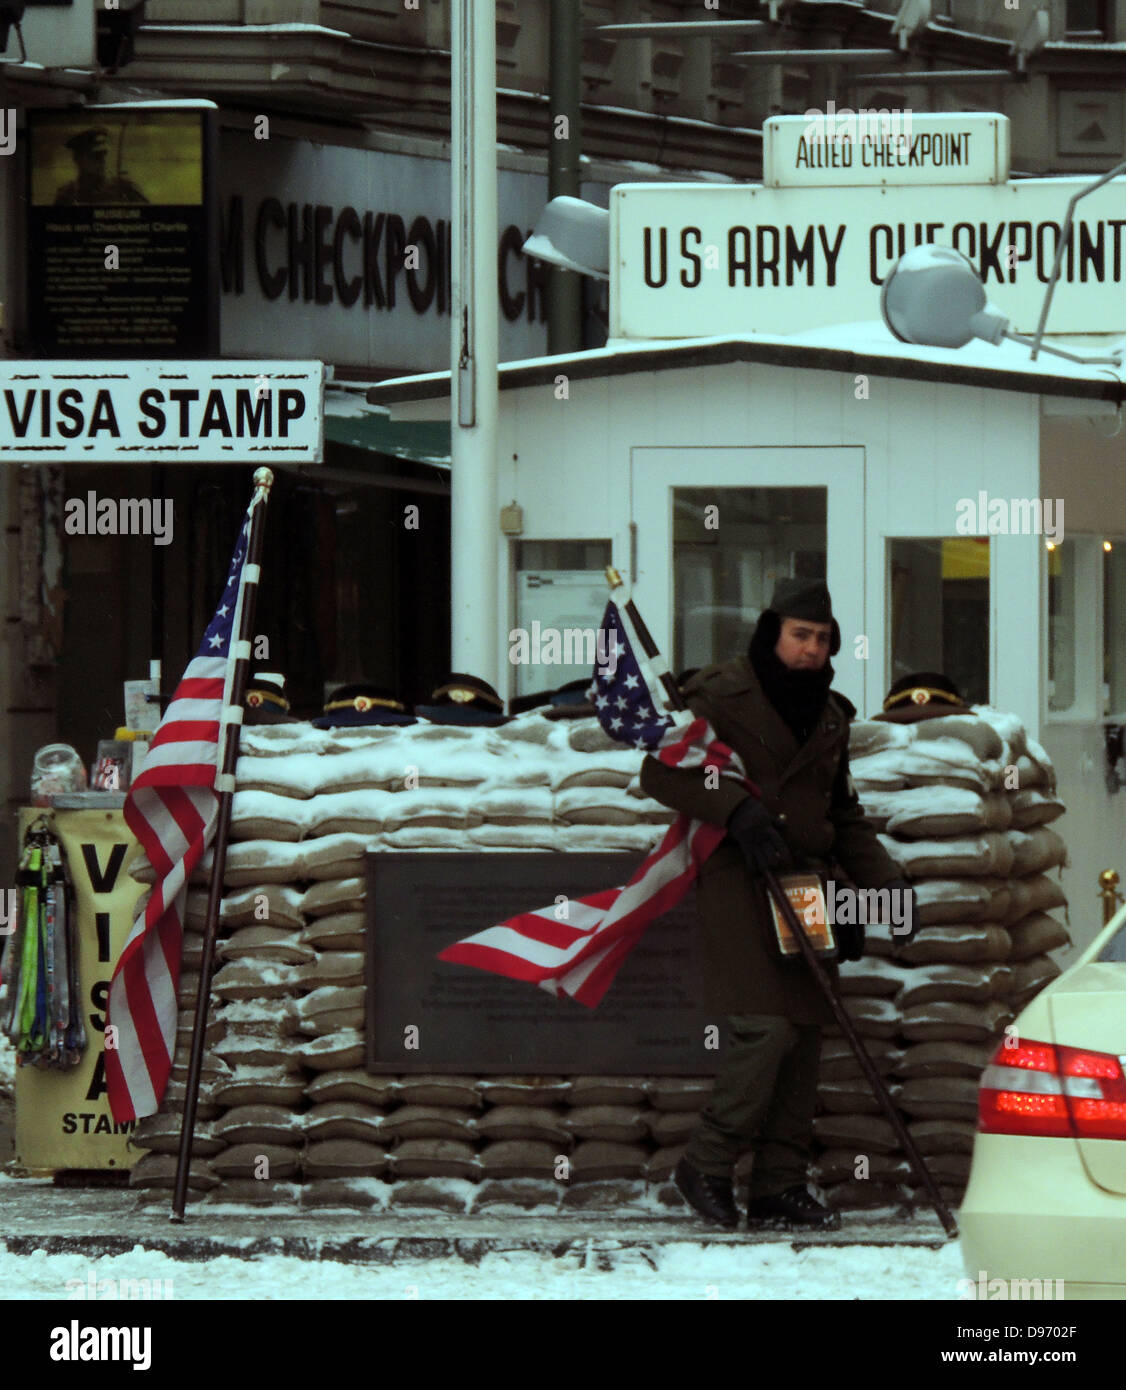 Le Checkpoint Charlie. Checkpoint Charlie était le nom donné par les alliés occidentaux de la plus connue au point de passage du mur de Berlin entre l'Est et l'ouest de Berlin pendant la guerre froide. Cette image montre le passage à niveau du poste après la réunification. Banque D'Images